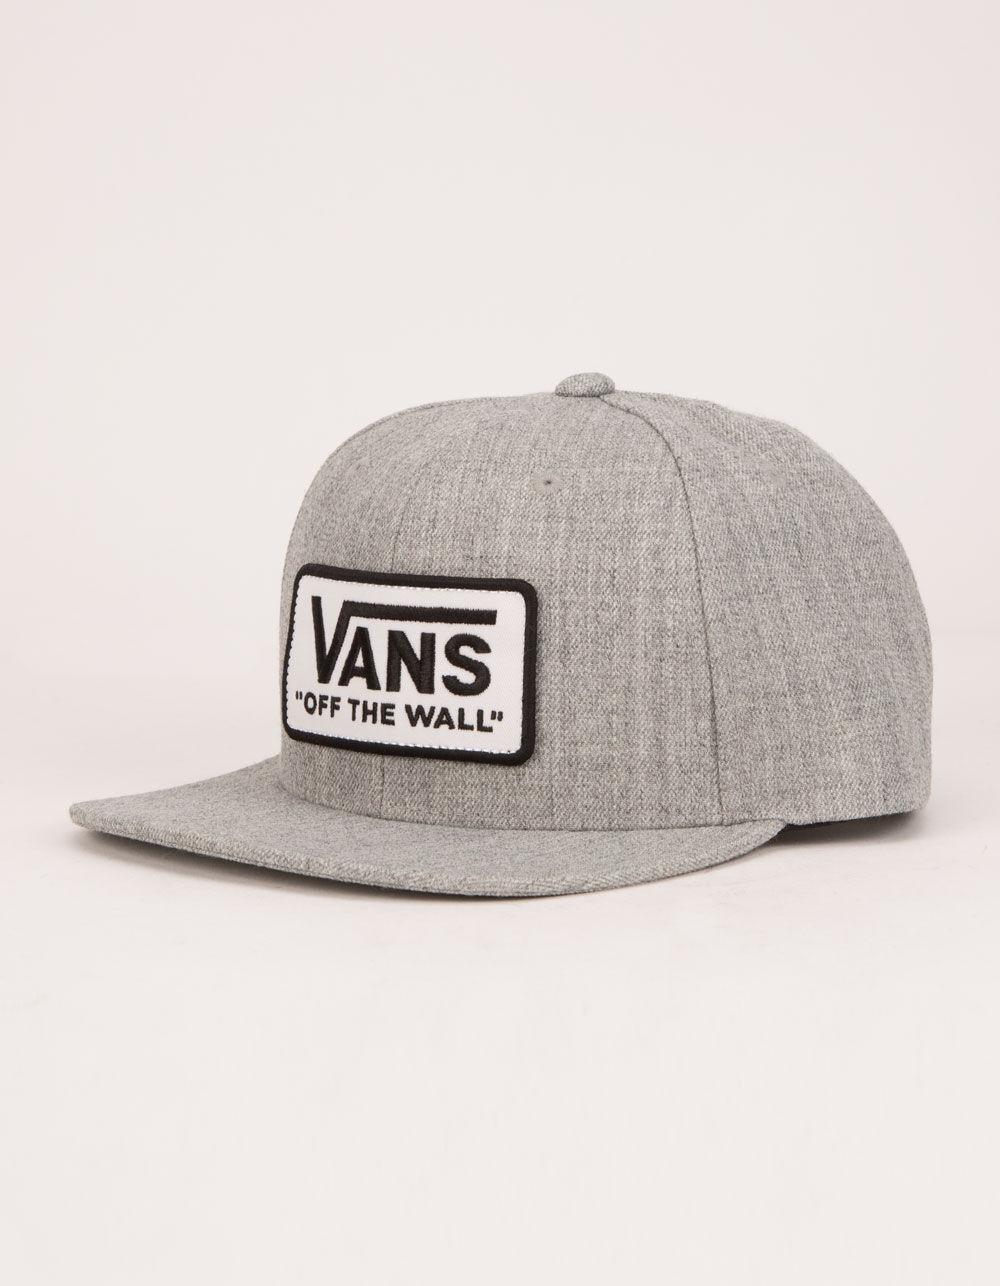 vans hats mens Grey